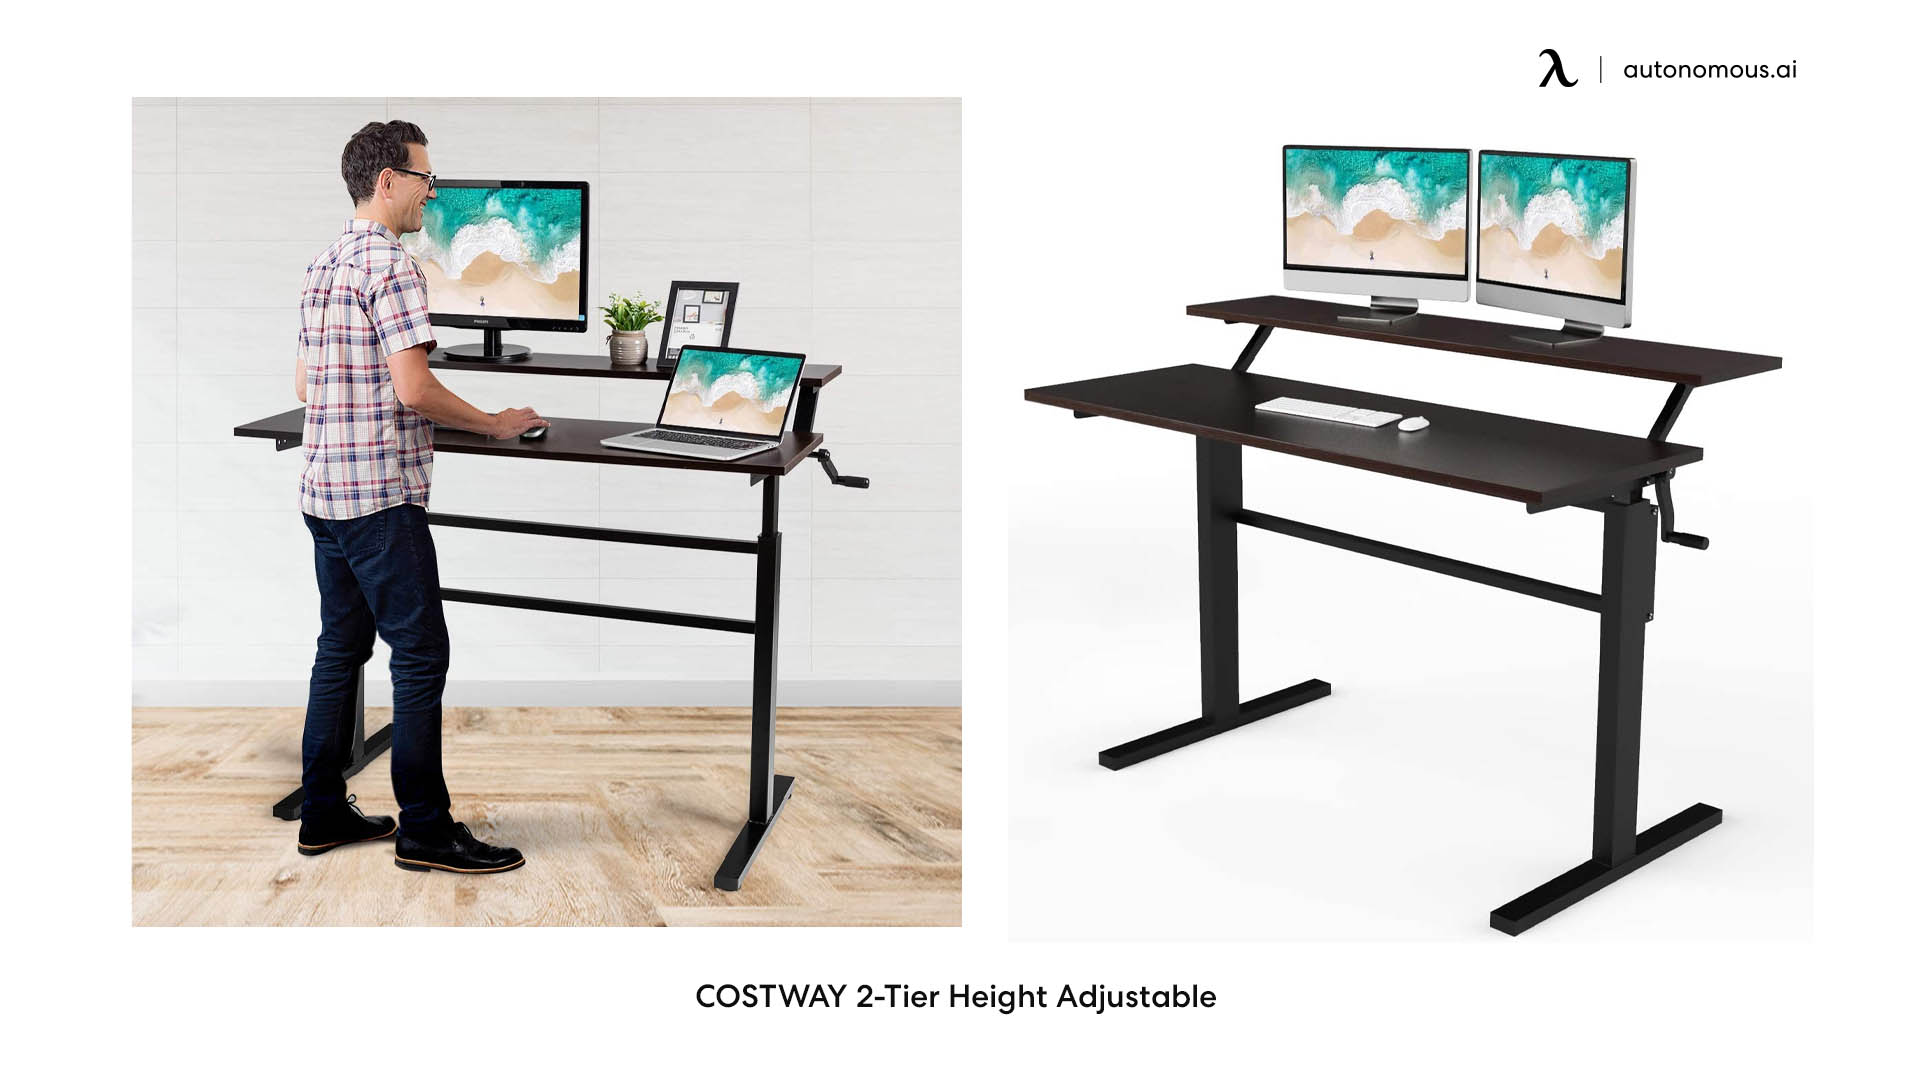 COSTWAY 2-Tier Height Adjustable crank standing desk